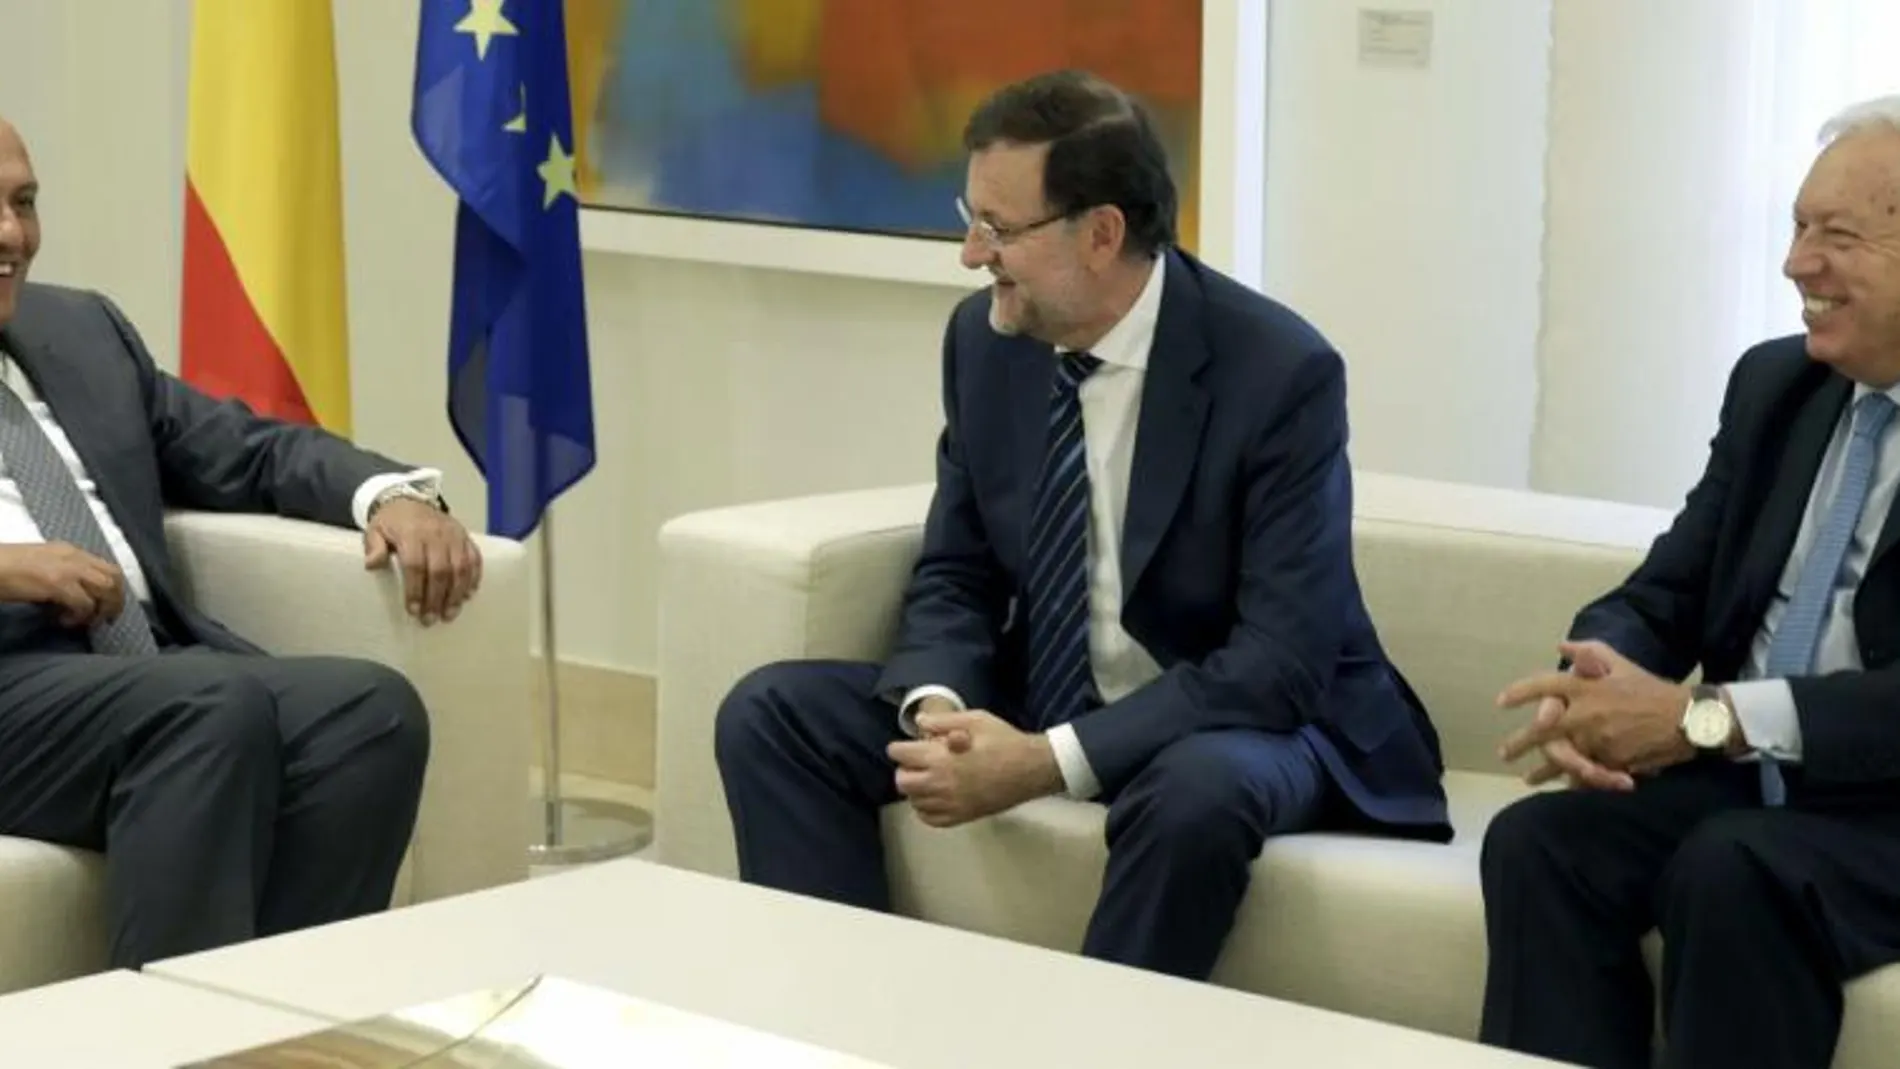 El presidente del Gobierno, Mariano Rajoy, acompañado del ministro de Asuntos Exteriores, José Manuel García-Margallo, conversa con el ministro de Asuntos Exteriores de Egipto, Sameh Shoukry